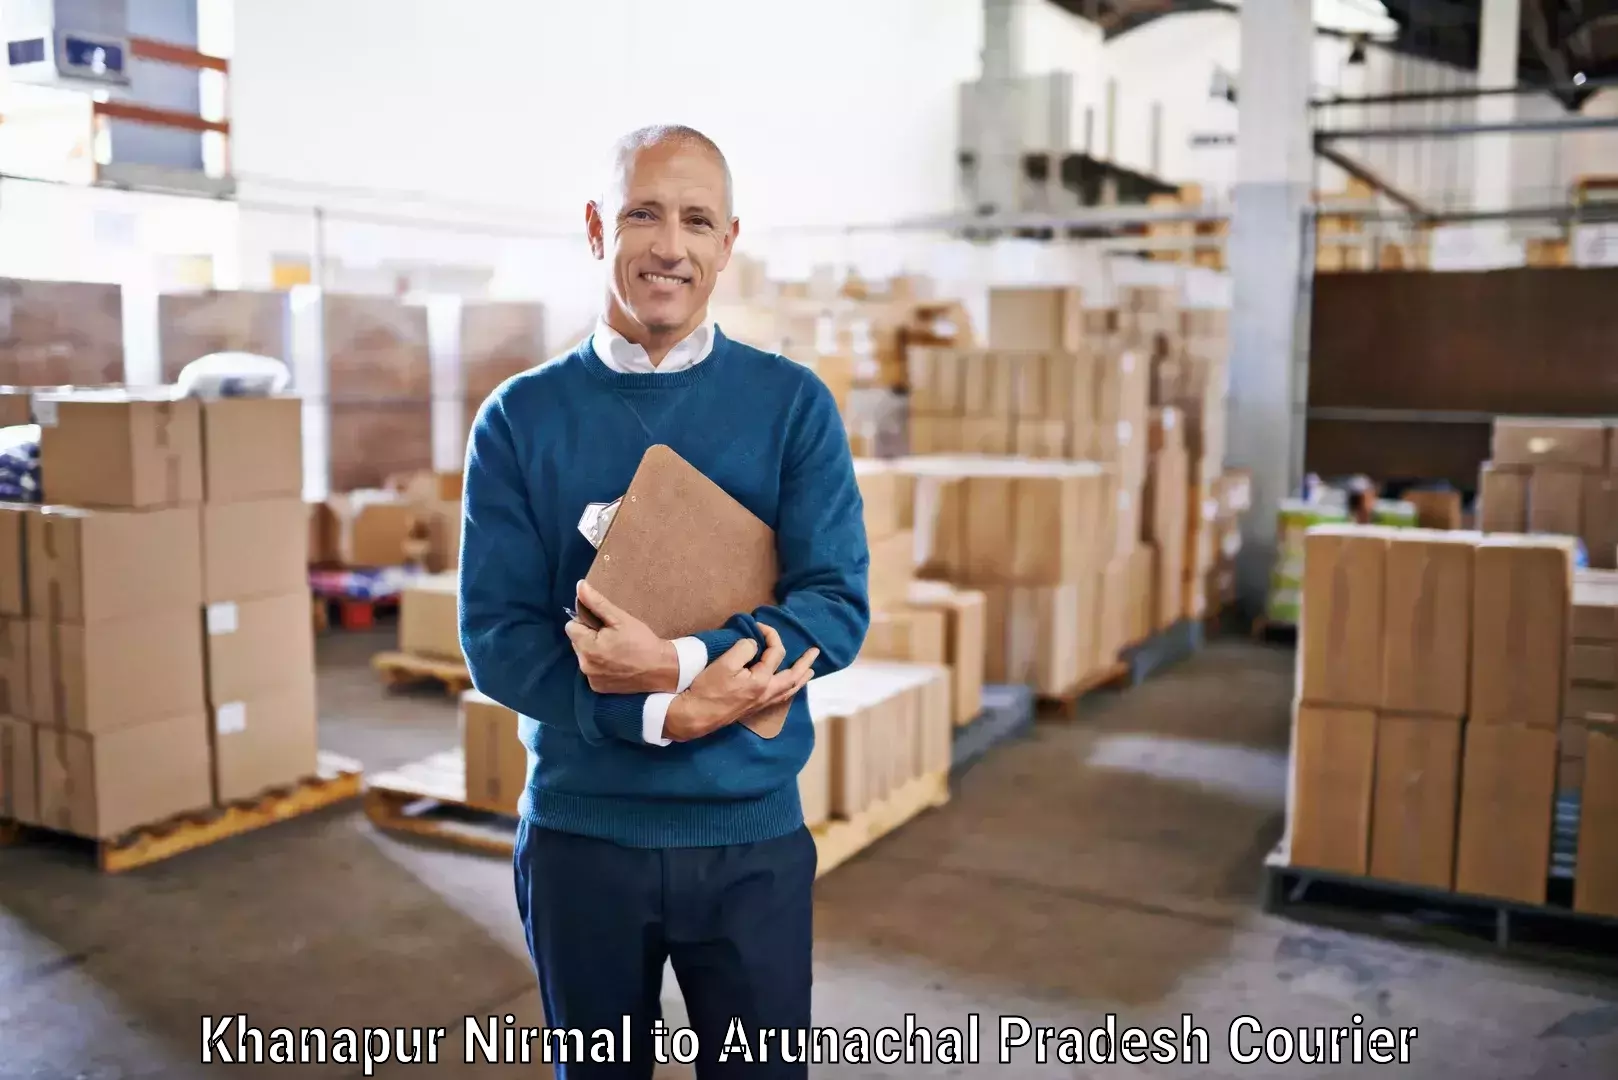 Reliable parcel services Khanapur Nirmal to Lohit